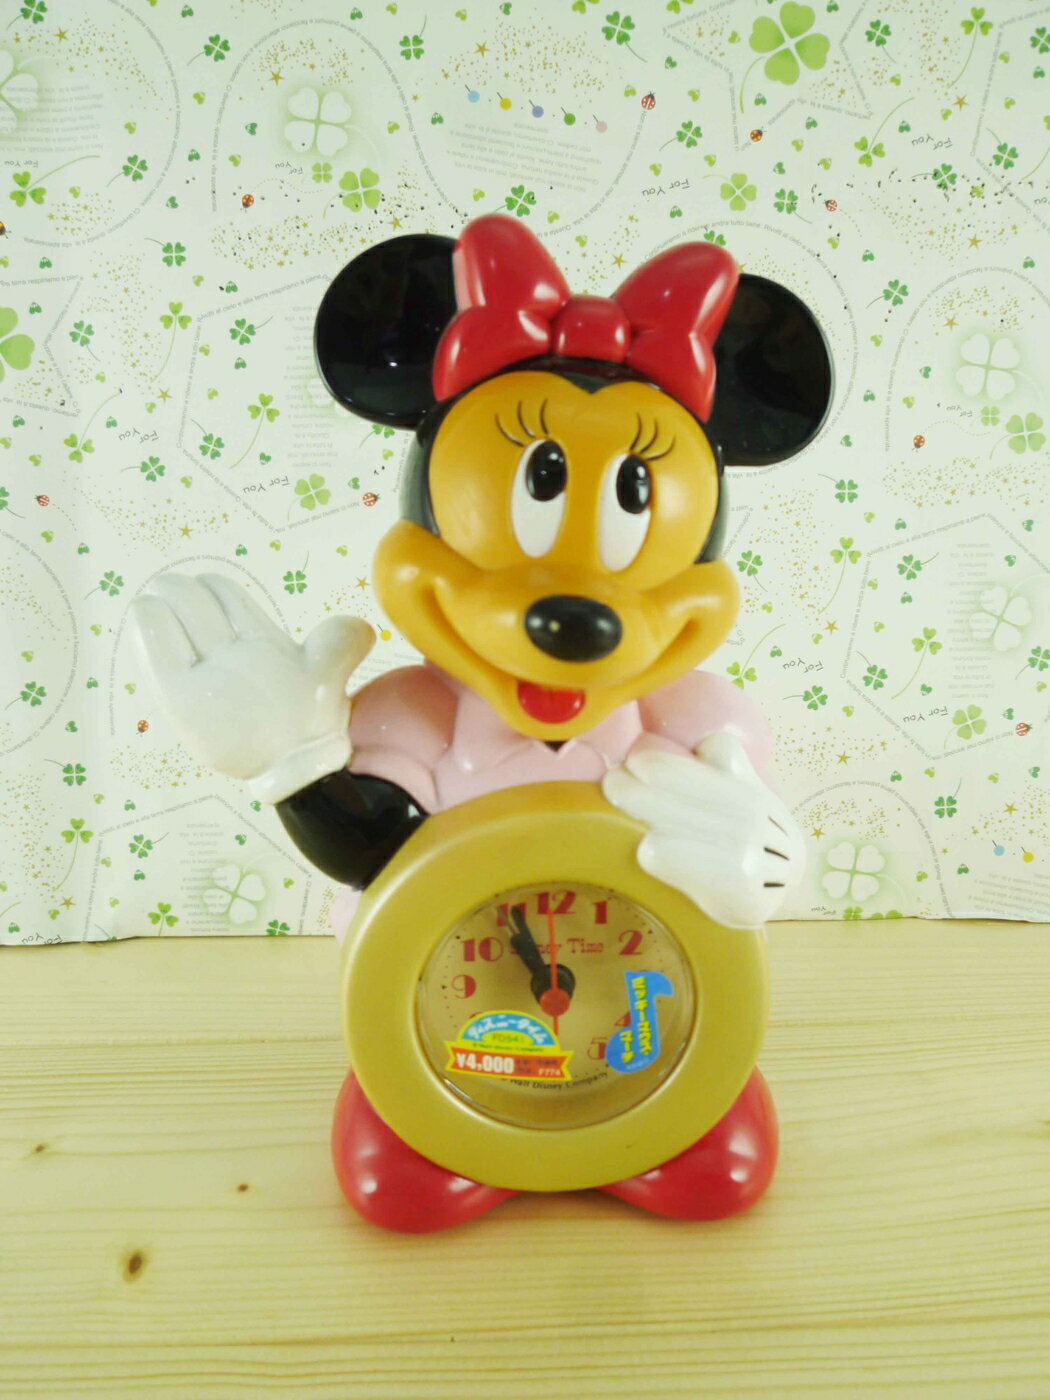 【震撼精品百貨】Micky Mouse 米奇/米妮 米妮鬧鐘-站姿造型 震撼日式精品百貨